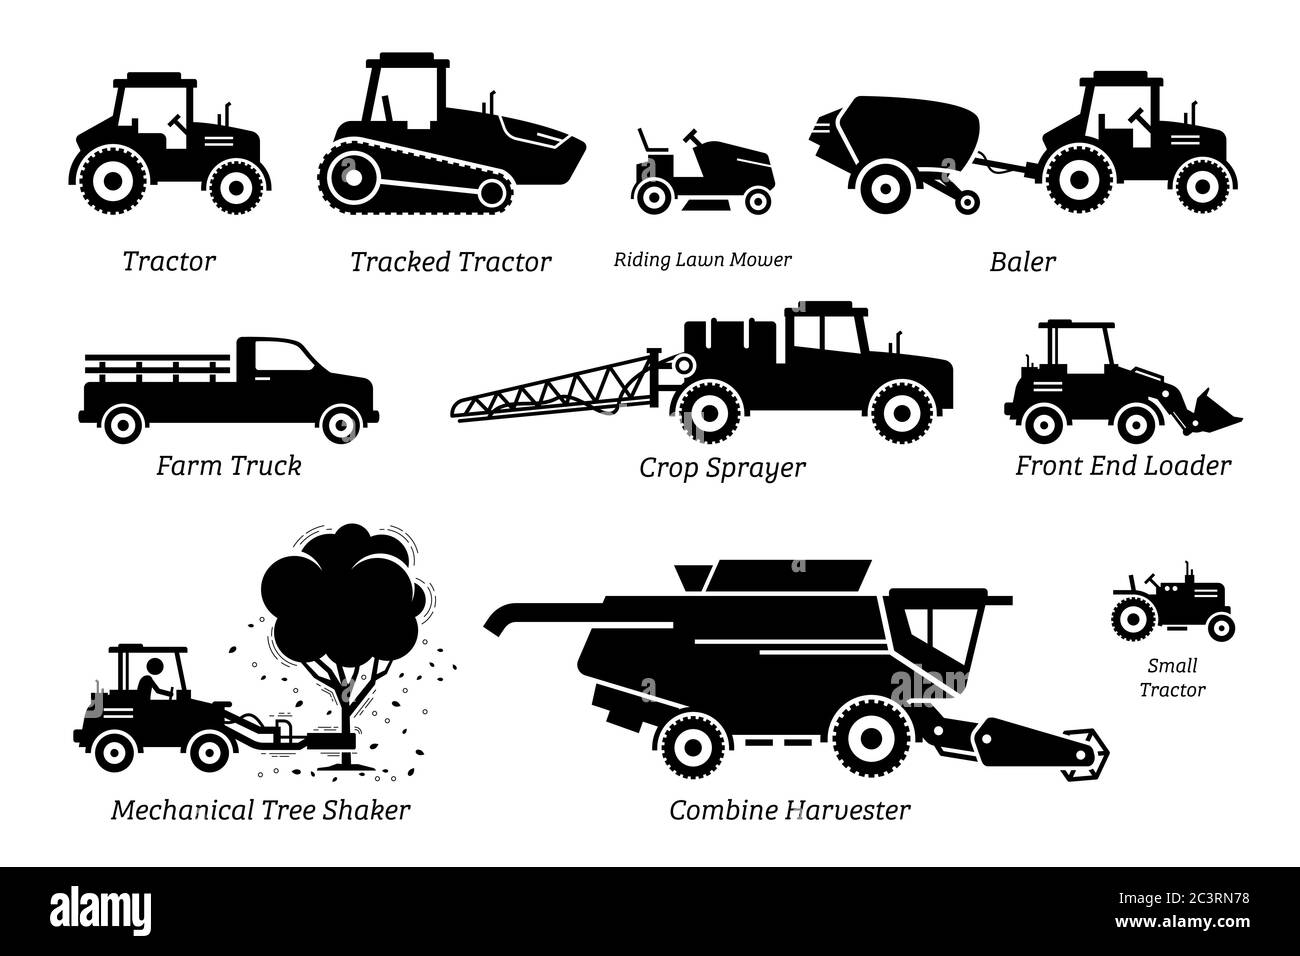 Liste der landwirtschaftlichen landwirtschaftlichen Fahrzeuge, Traktoren, LKW und Maschinen. Abbildungen zeigen Traktor, Rasenmäher, Ballenpresse, Landfahrzeug, Feldspritze, vorn Stock Vektor